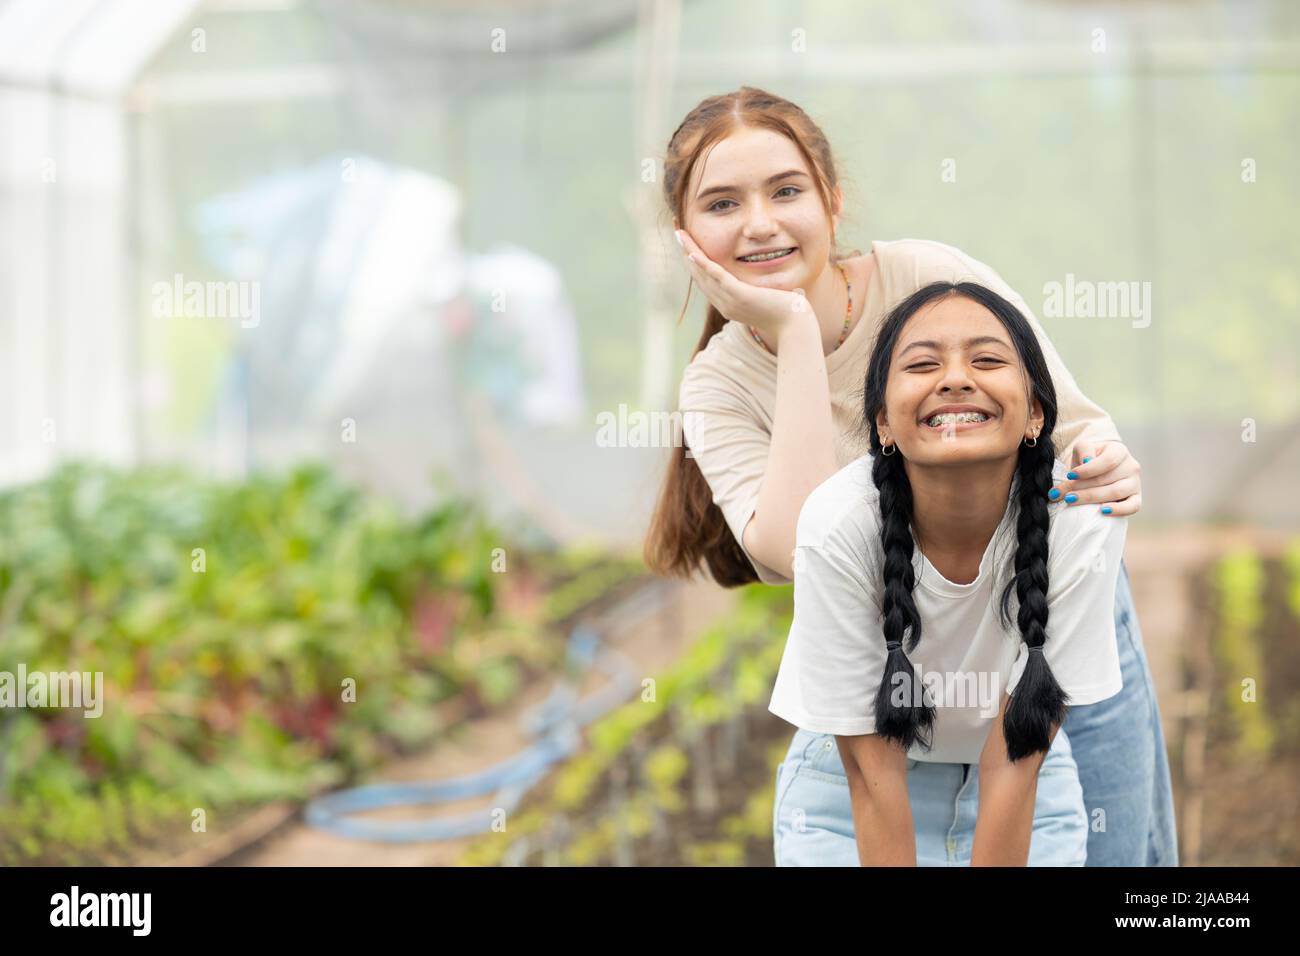 Zwei junge Teenager Mädchen glücklich lächelnd zusammen Freund mischen Rennen im Park Garten Stockfoto